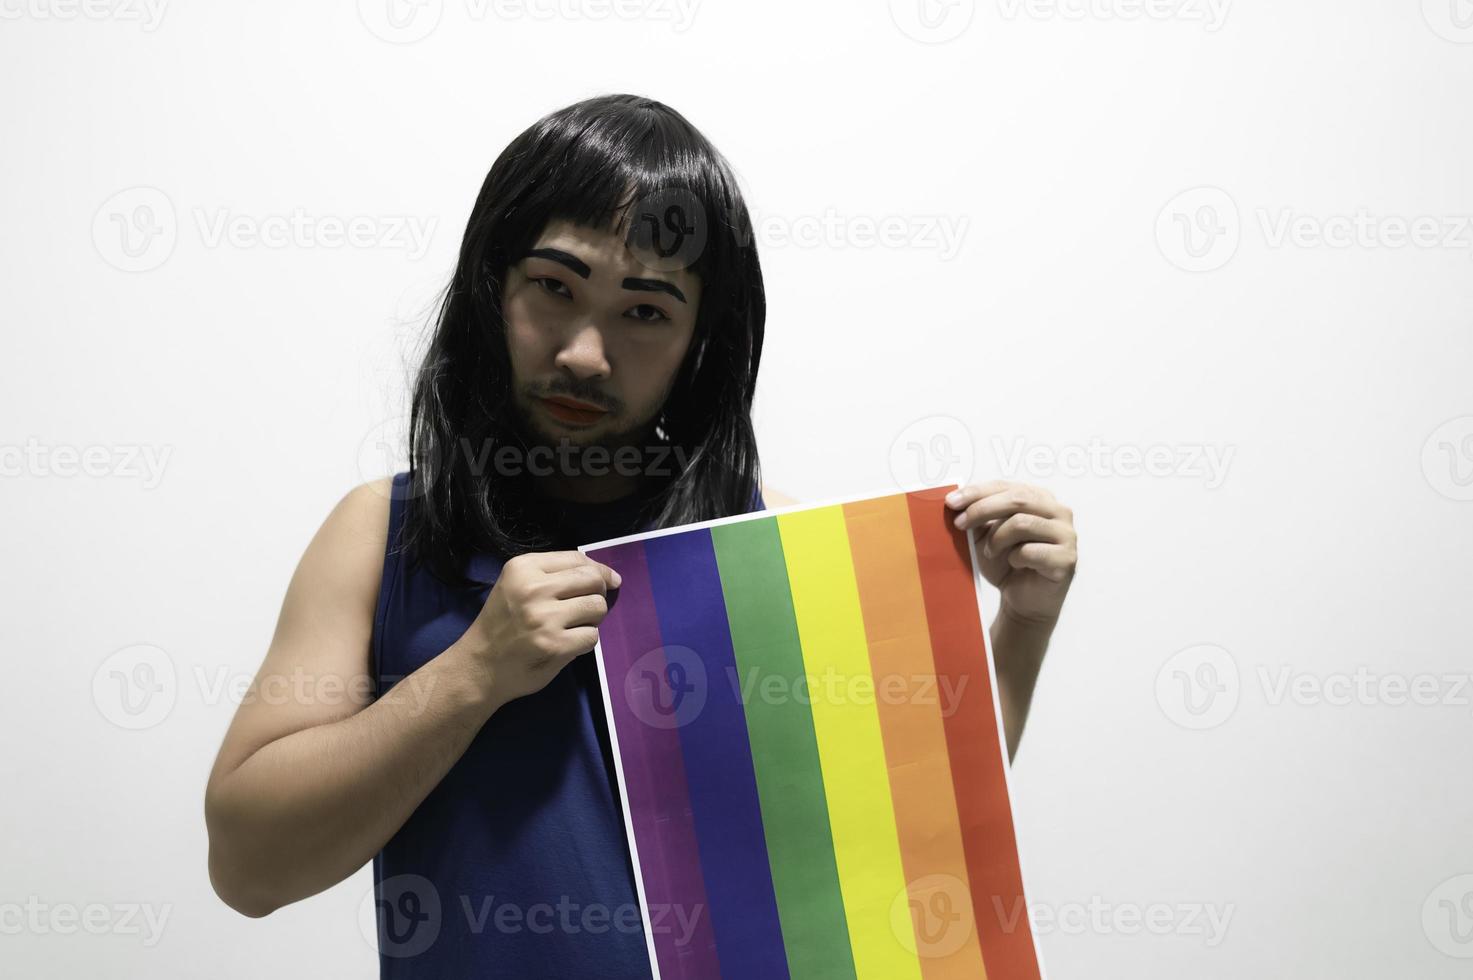 lgbt-pride-monatskonzept, asiatischer gutaussehender mann schminkt und trägt frauenstoff, homosexueller freiheitstag, porträt von nicht-binären auf weißem hintergrund foto